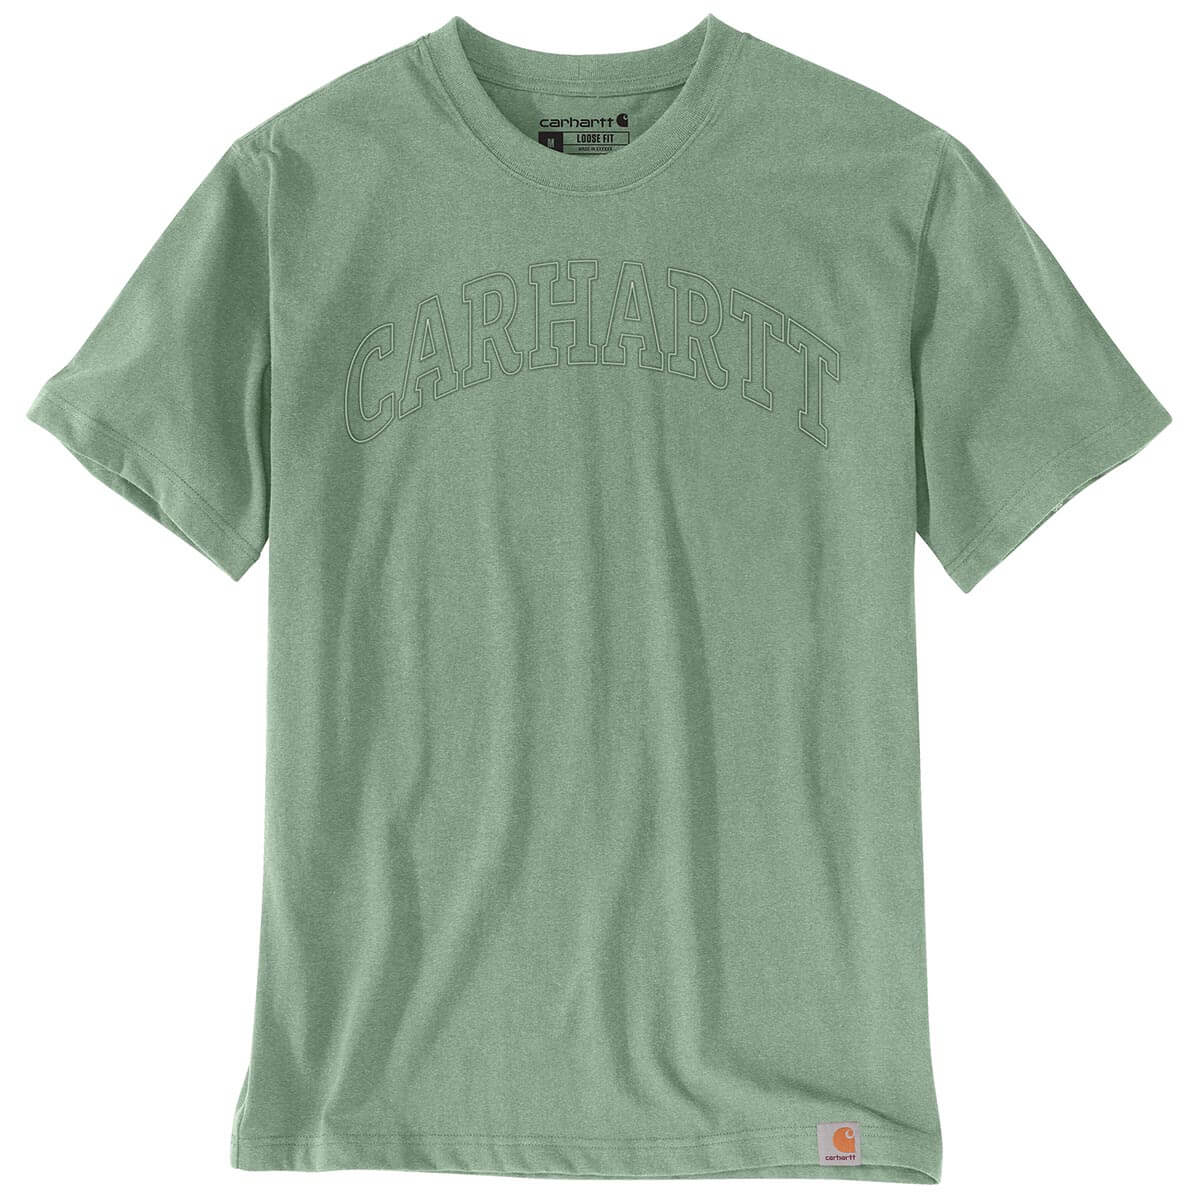 106156 - Carhartt Relaxed Fit Heavyweight Short-Sleeve Logo Graphic T-Shirt